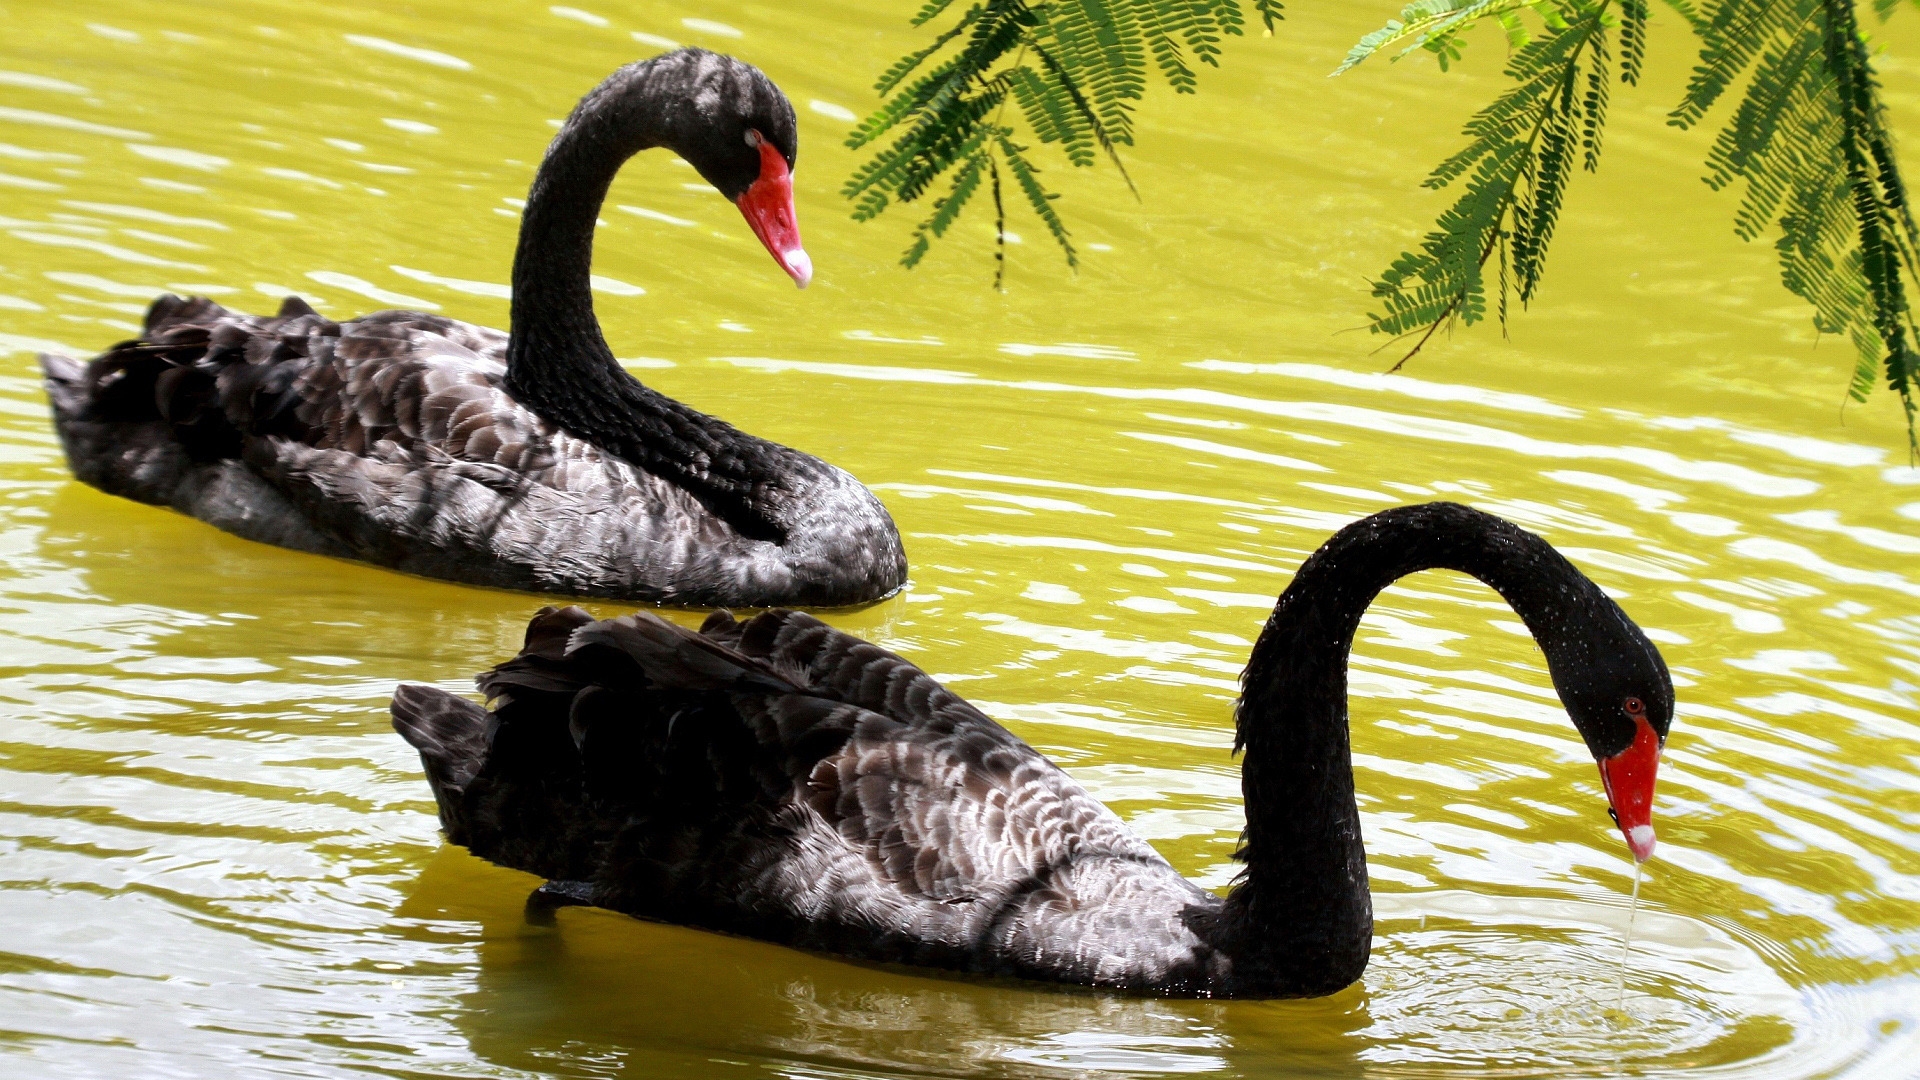 Black Swans for 1920 x 1080 HDTV 1080p resolution